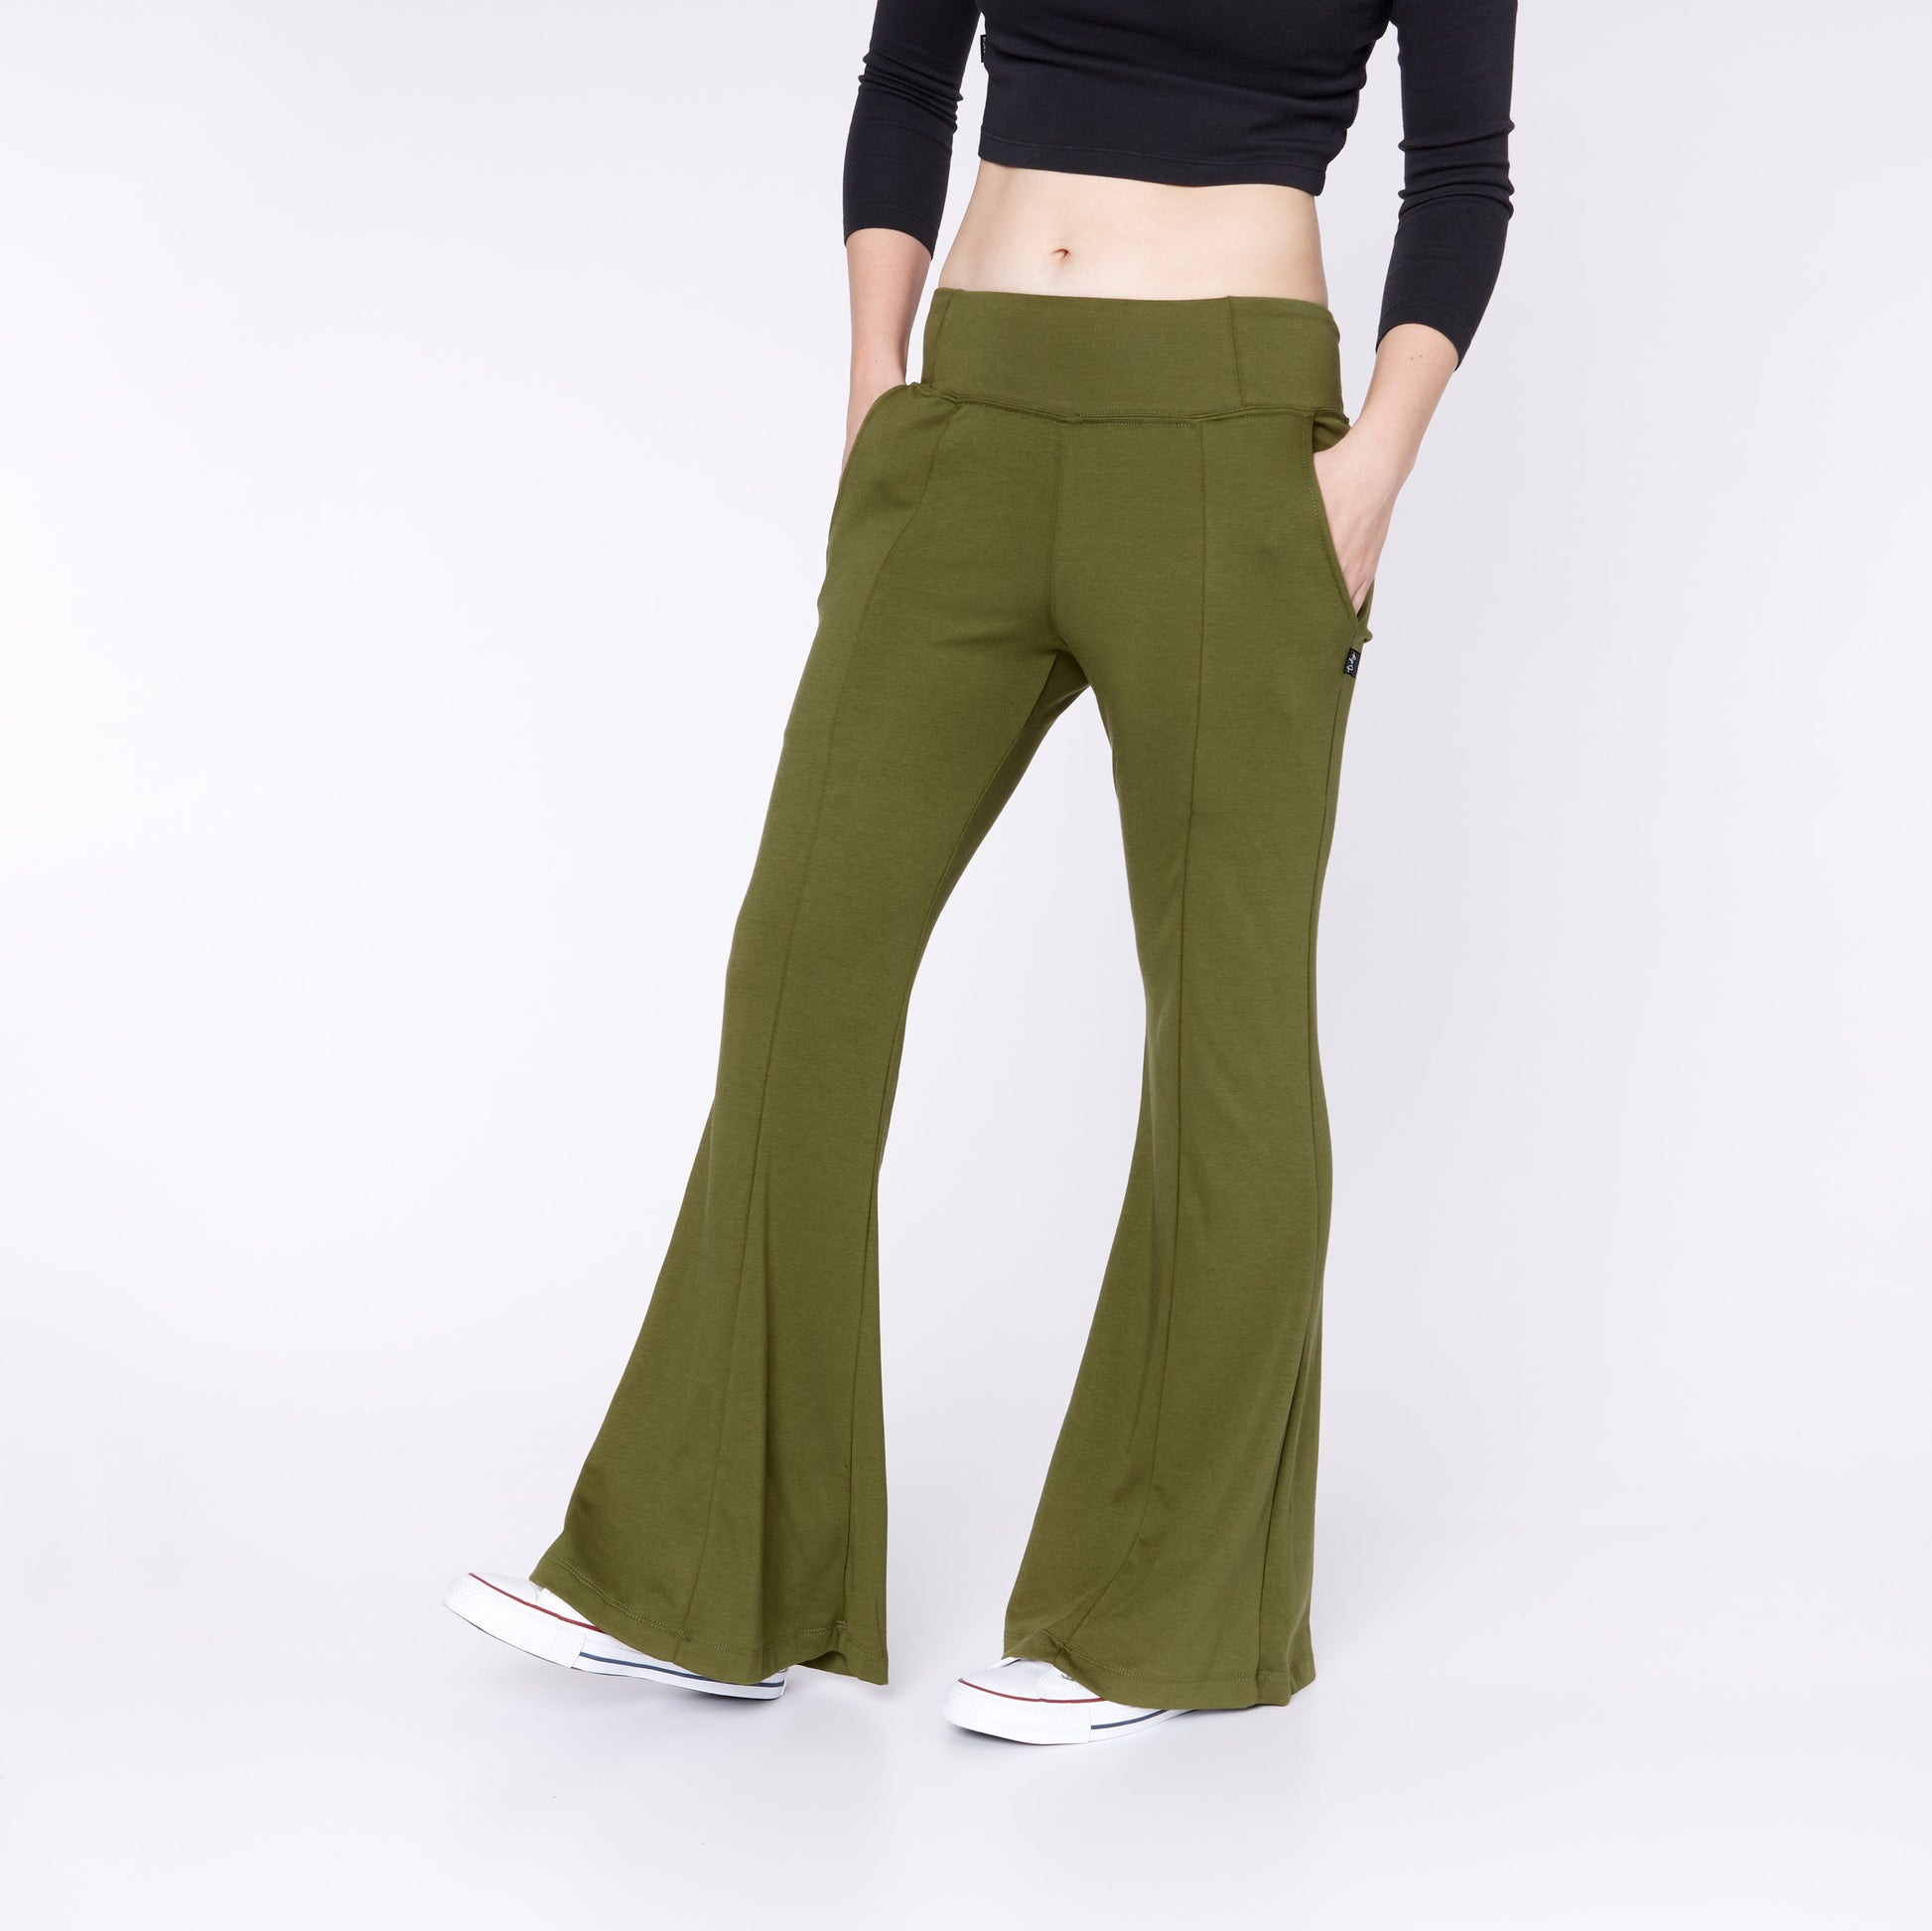 https://littleandlively.com/cdn/shop/products/womens-flares-olive-leggings-little-lively-199.jpg?v=1674920052&width=1946